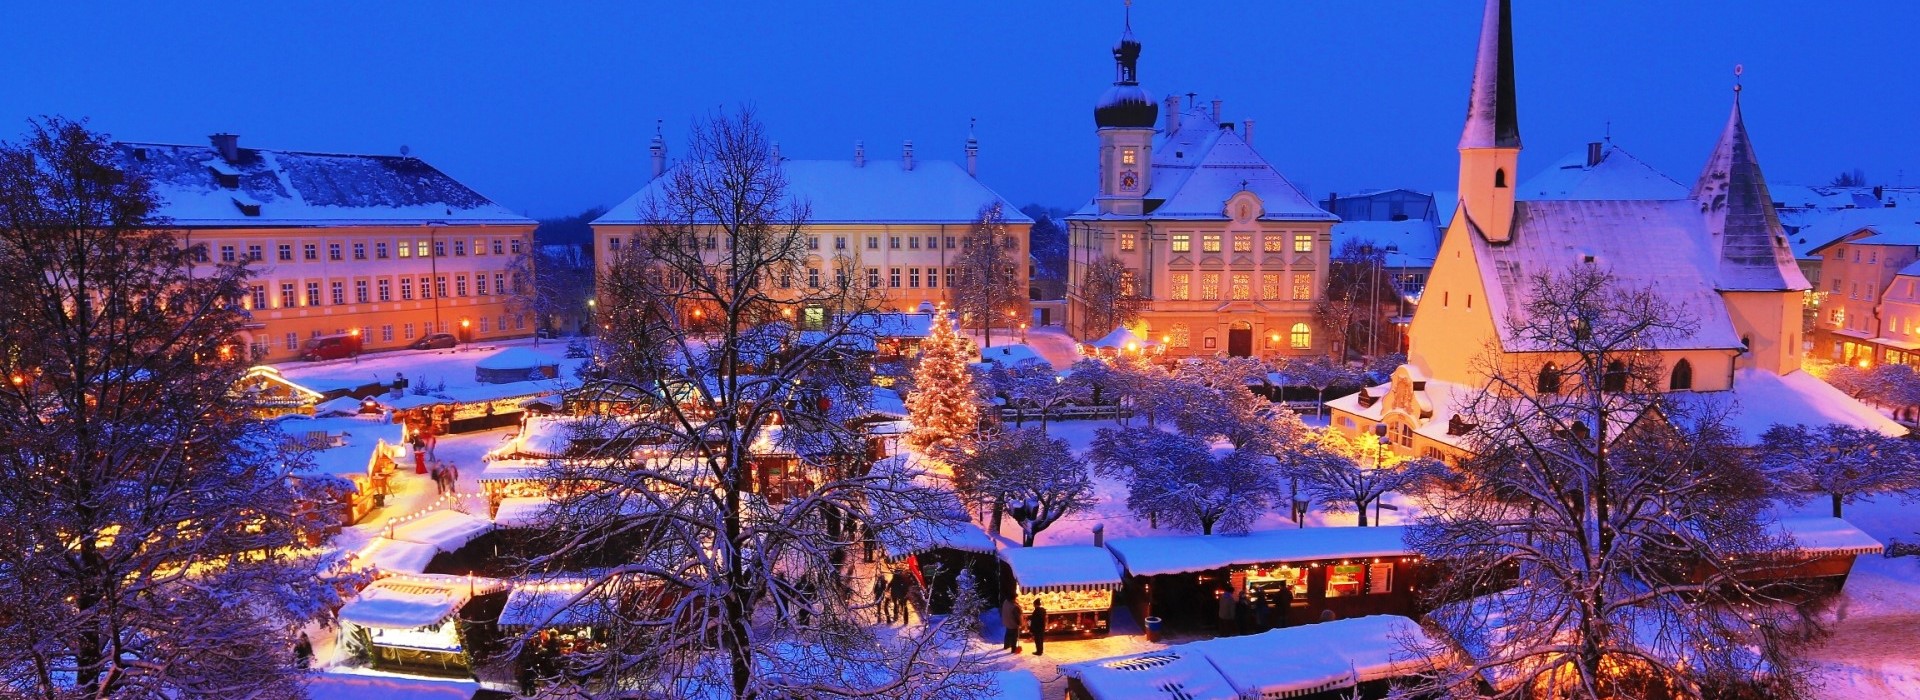 Der Altöttinger Christkindlmarkt auf dem barocken Kapellplatz mit Schnee.